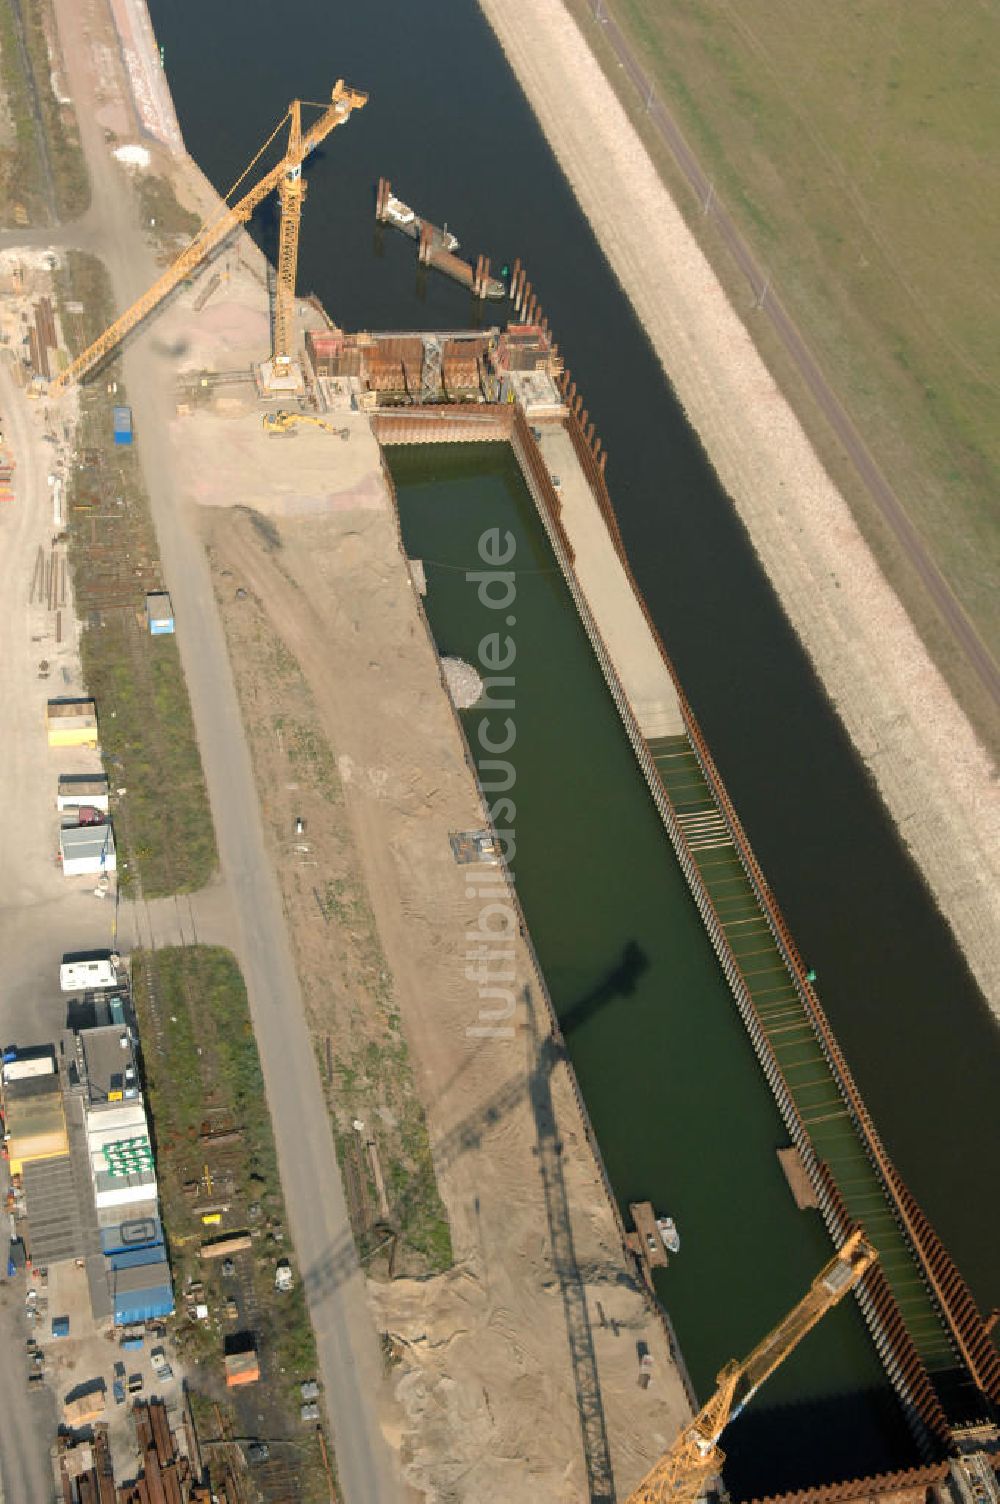 Magdeburg von oben - Baustelle Niedrigwasserschleuse an der Steinkopfinsel im Hafen / Binnenhafen Magdeburg an der Elbe